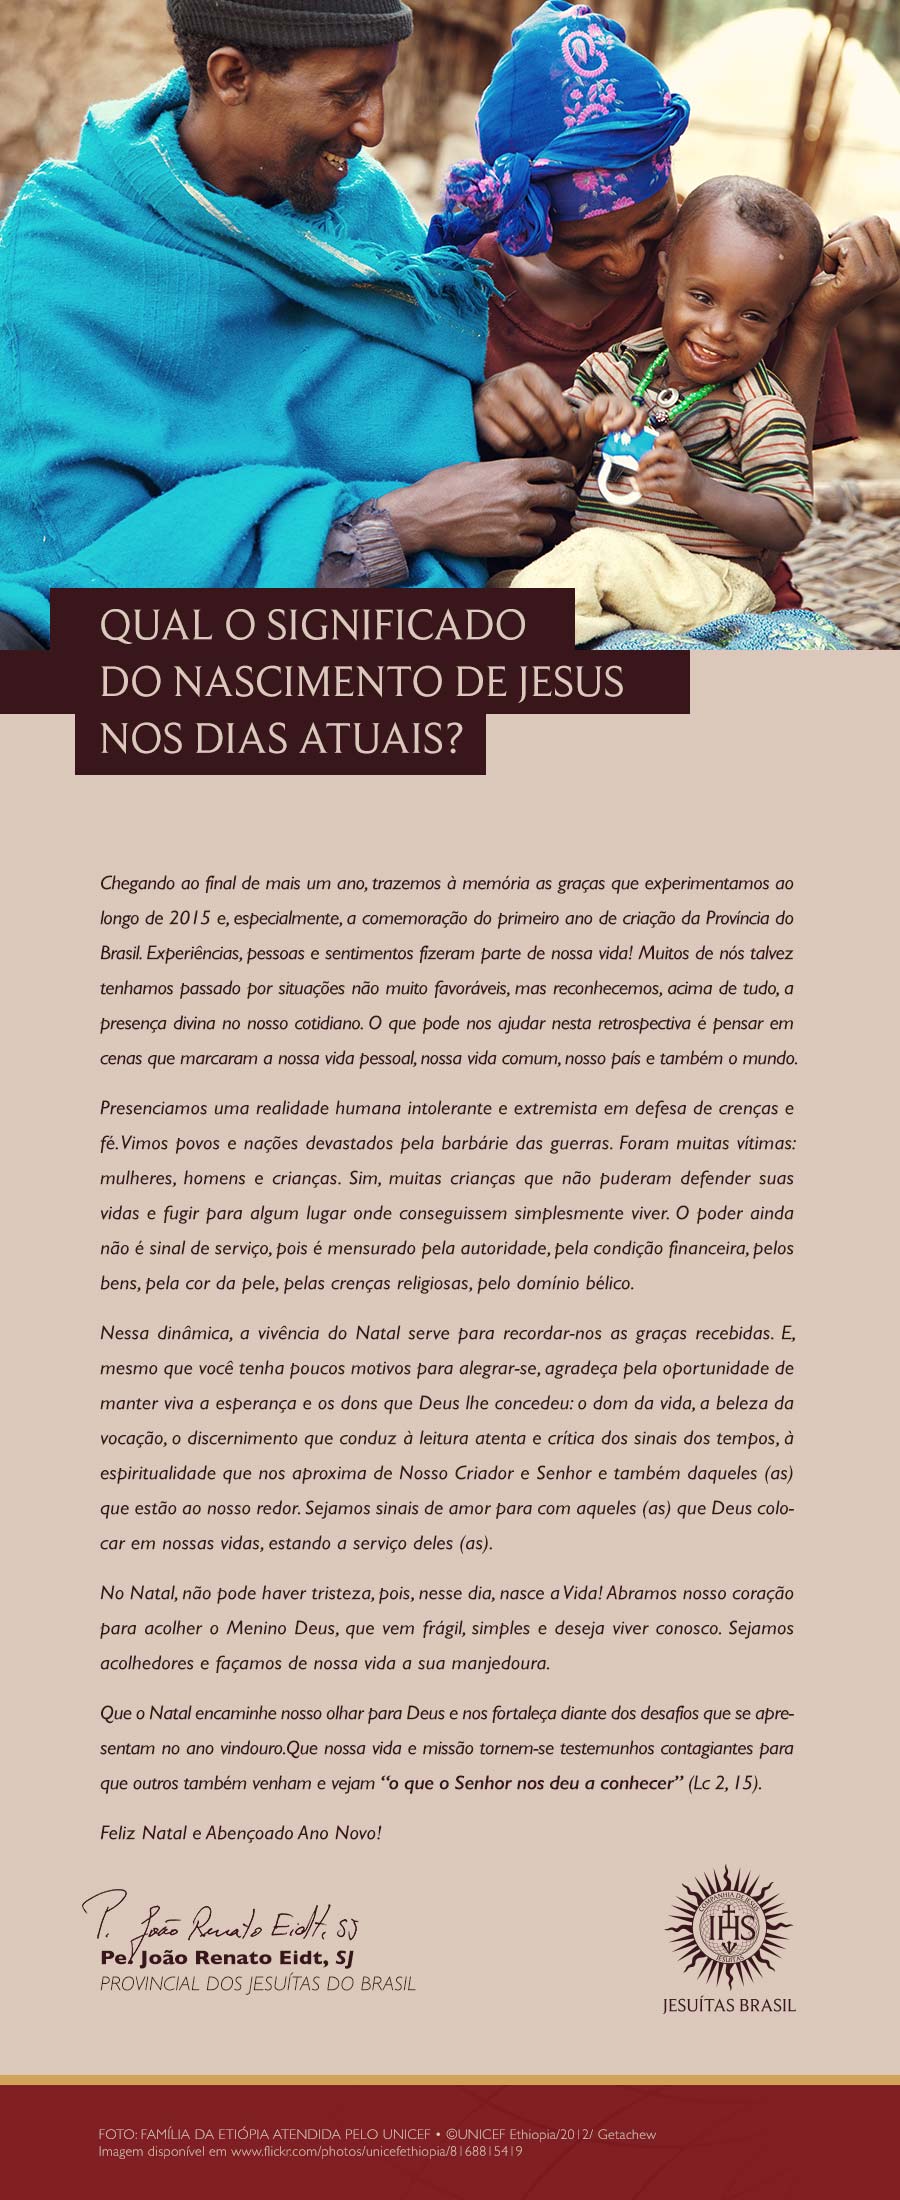 email-marketing-natal-2015-jesuitas-brasil-04